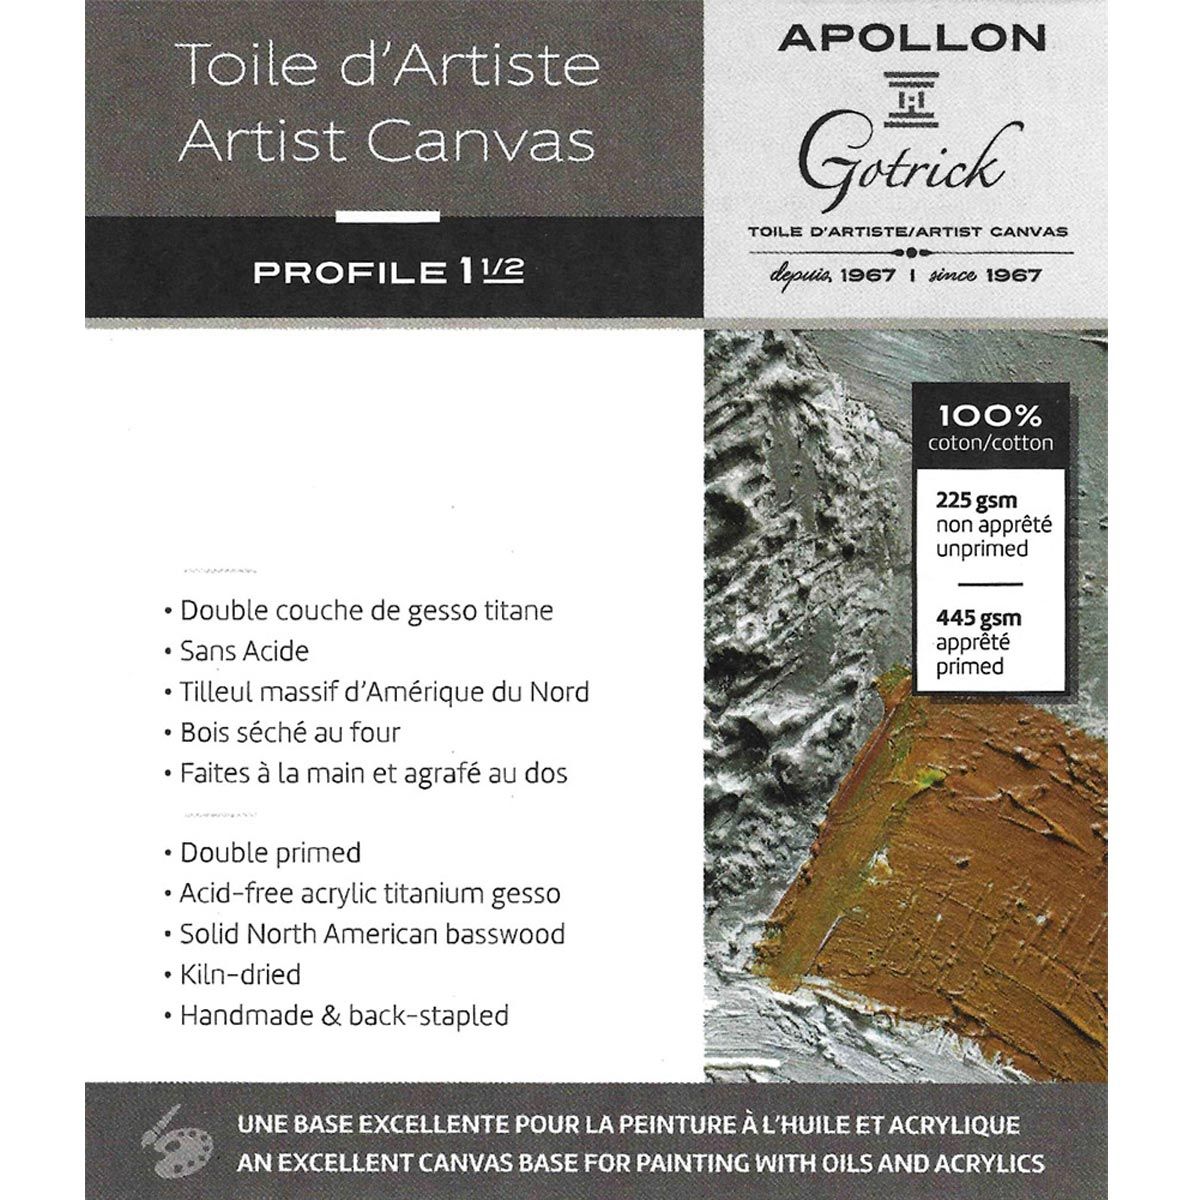 Apollon Gotrick Gallery Artist Canvas Profile 1½" - 10" x 30"